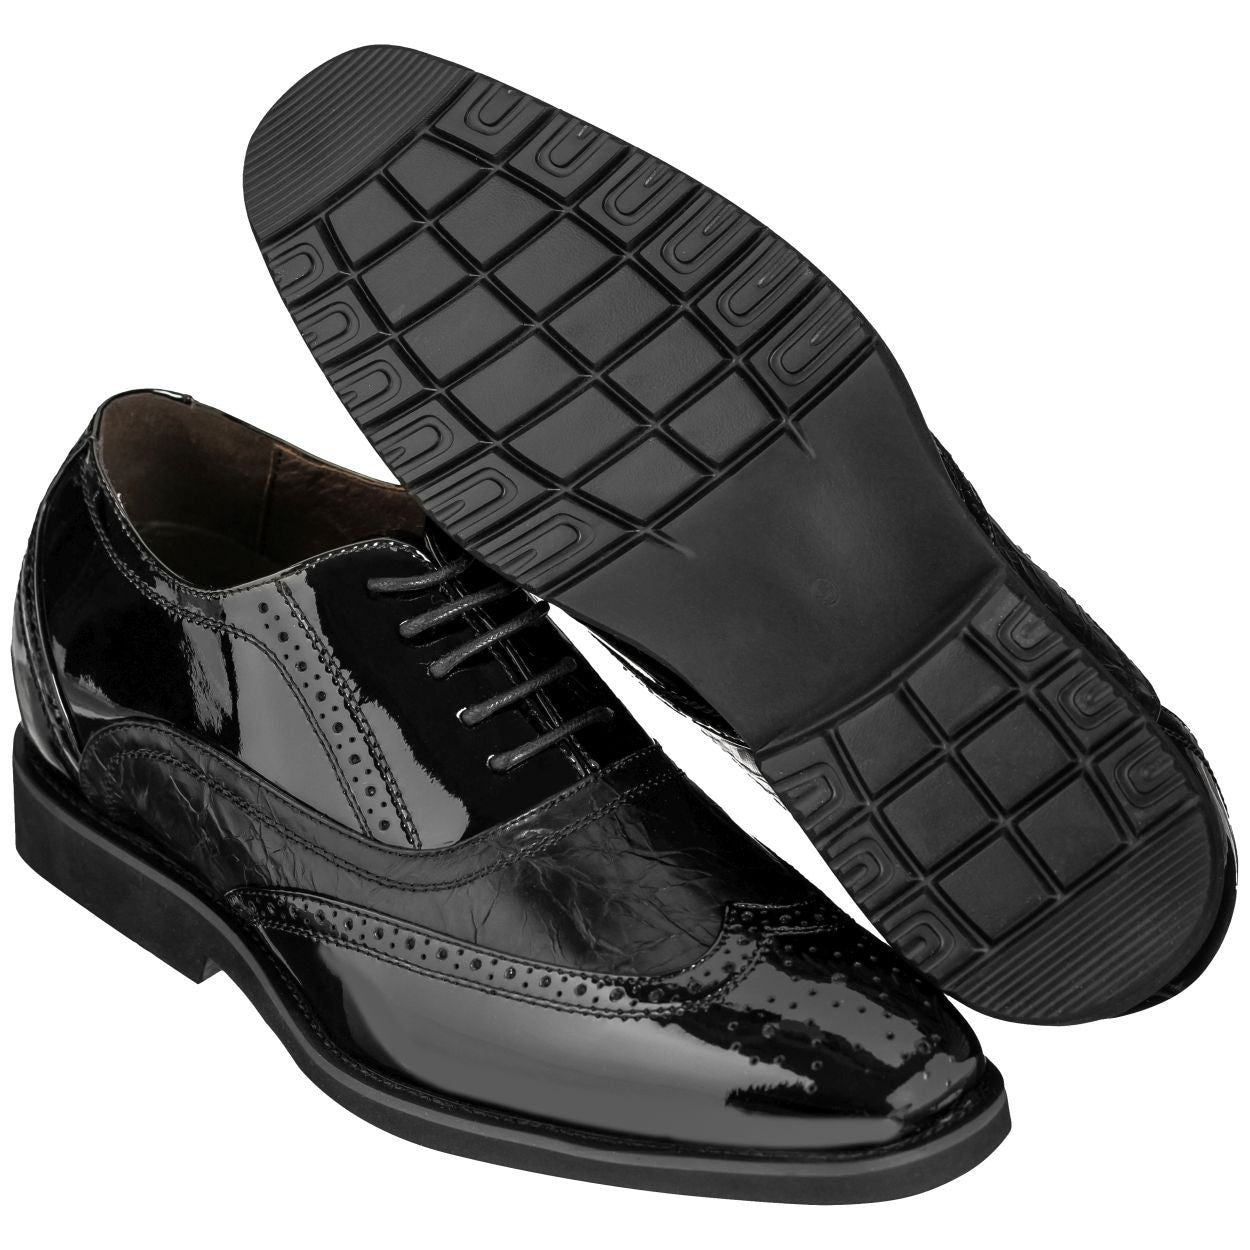 Elevator shoes height increase CALDEN 2.4-Inch Taller Black Elevator Dress Shoes K320011